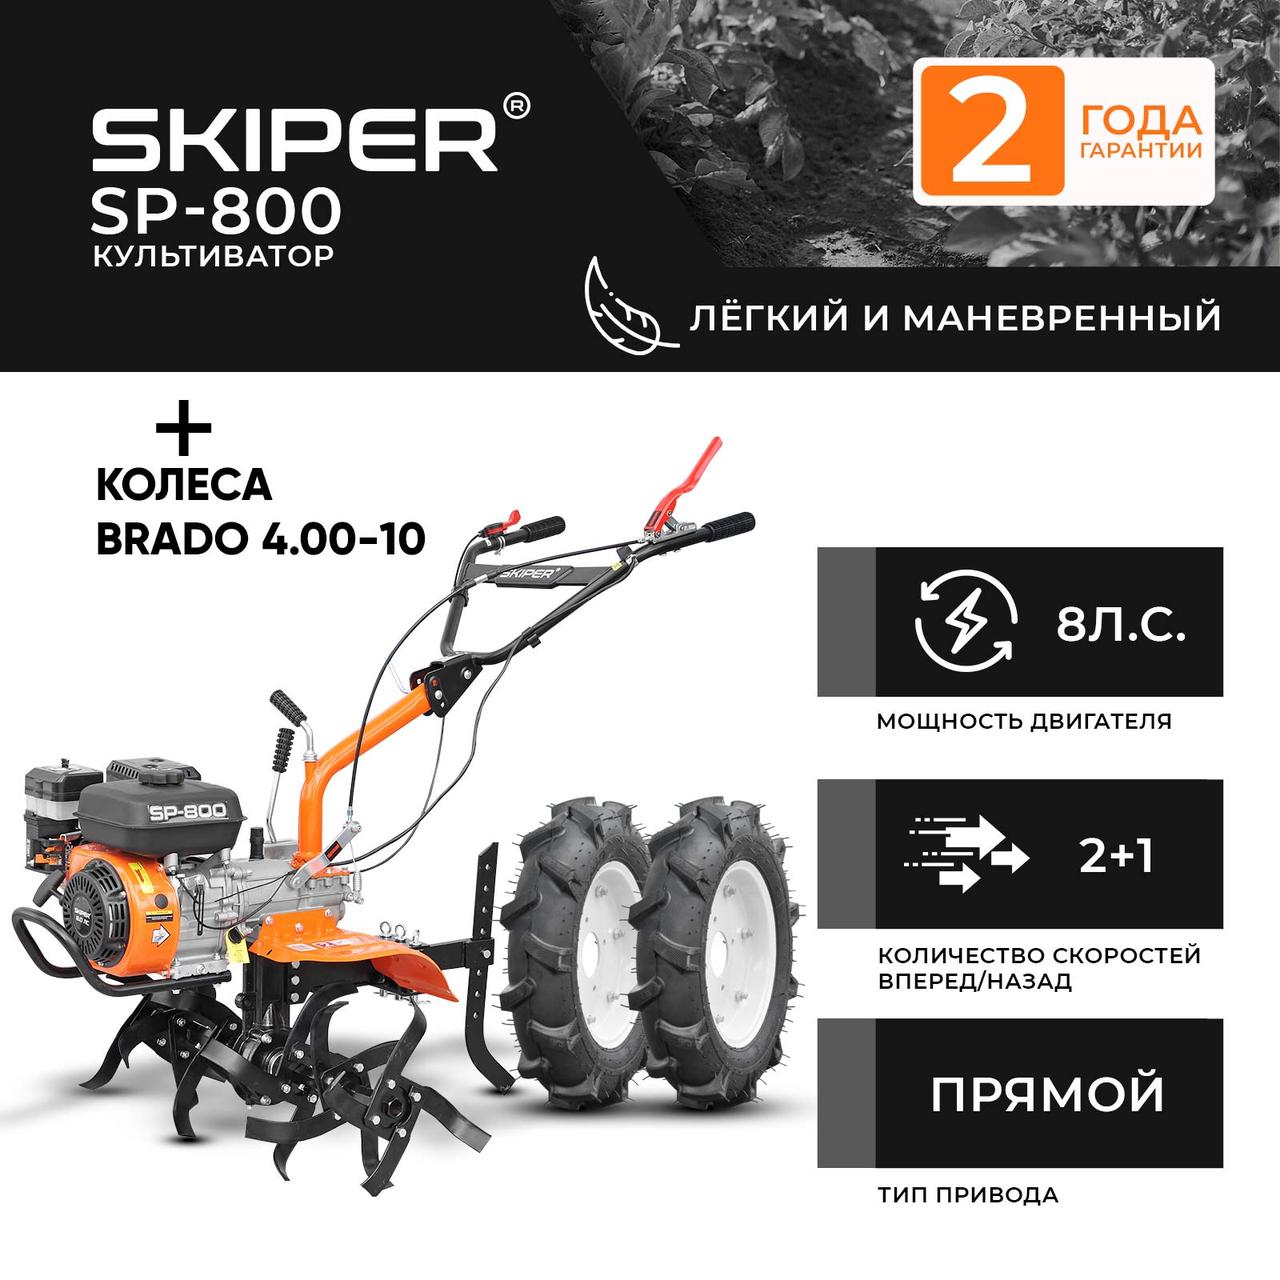 Культиватор SKIPER SP-800 + колеса BRADO 4.00-10 (комплект)